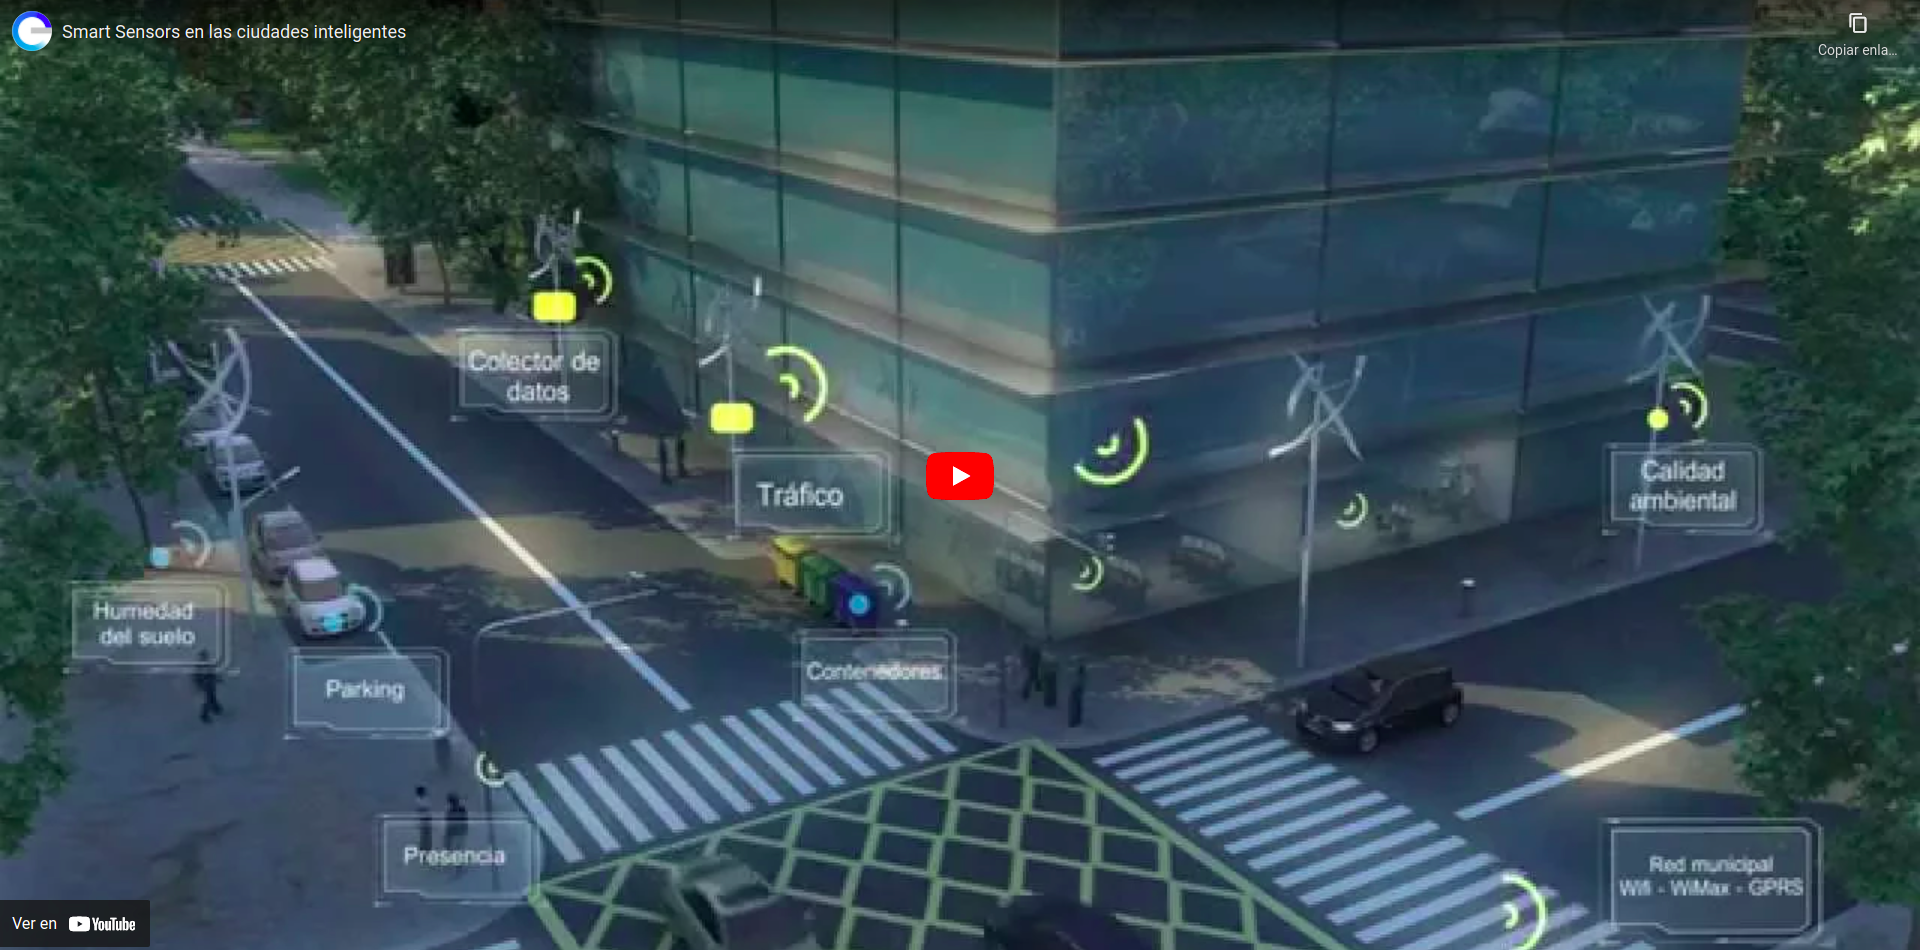 Vídeo que describe la aplicación de los sensores en las ciudades inteligentes